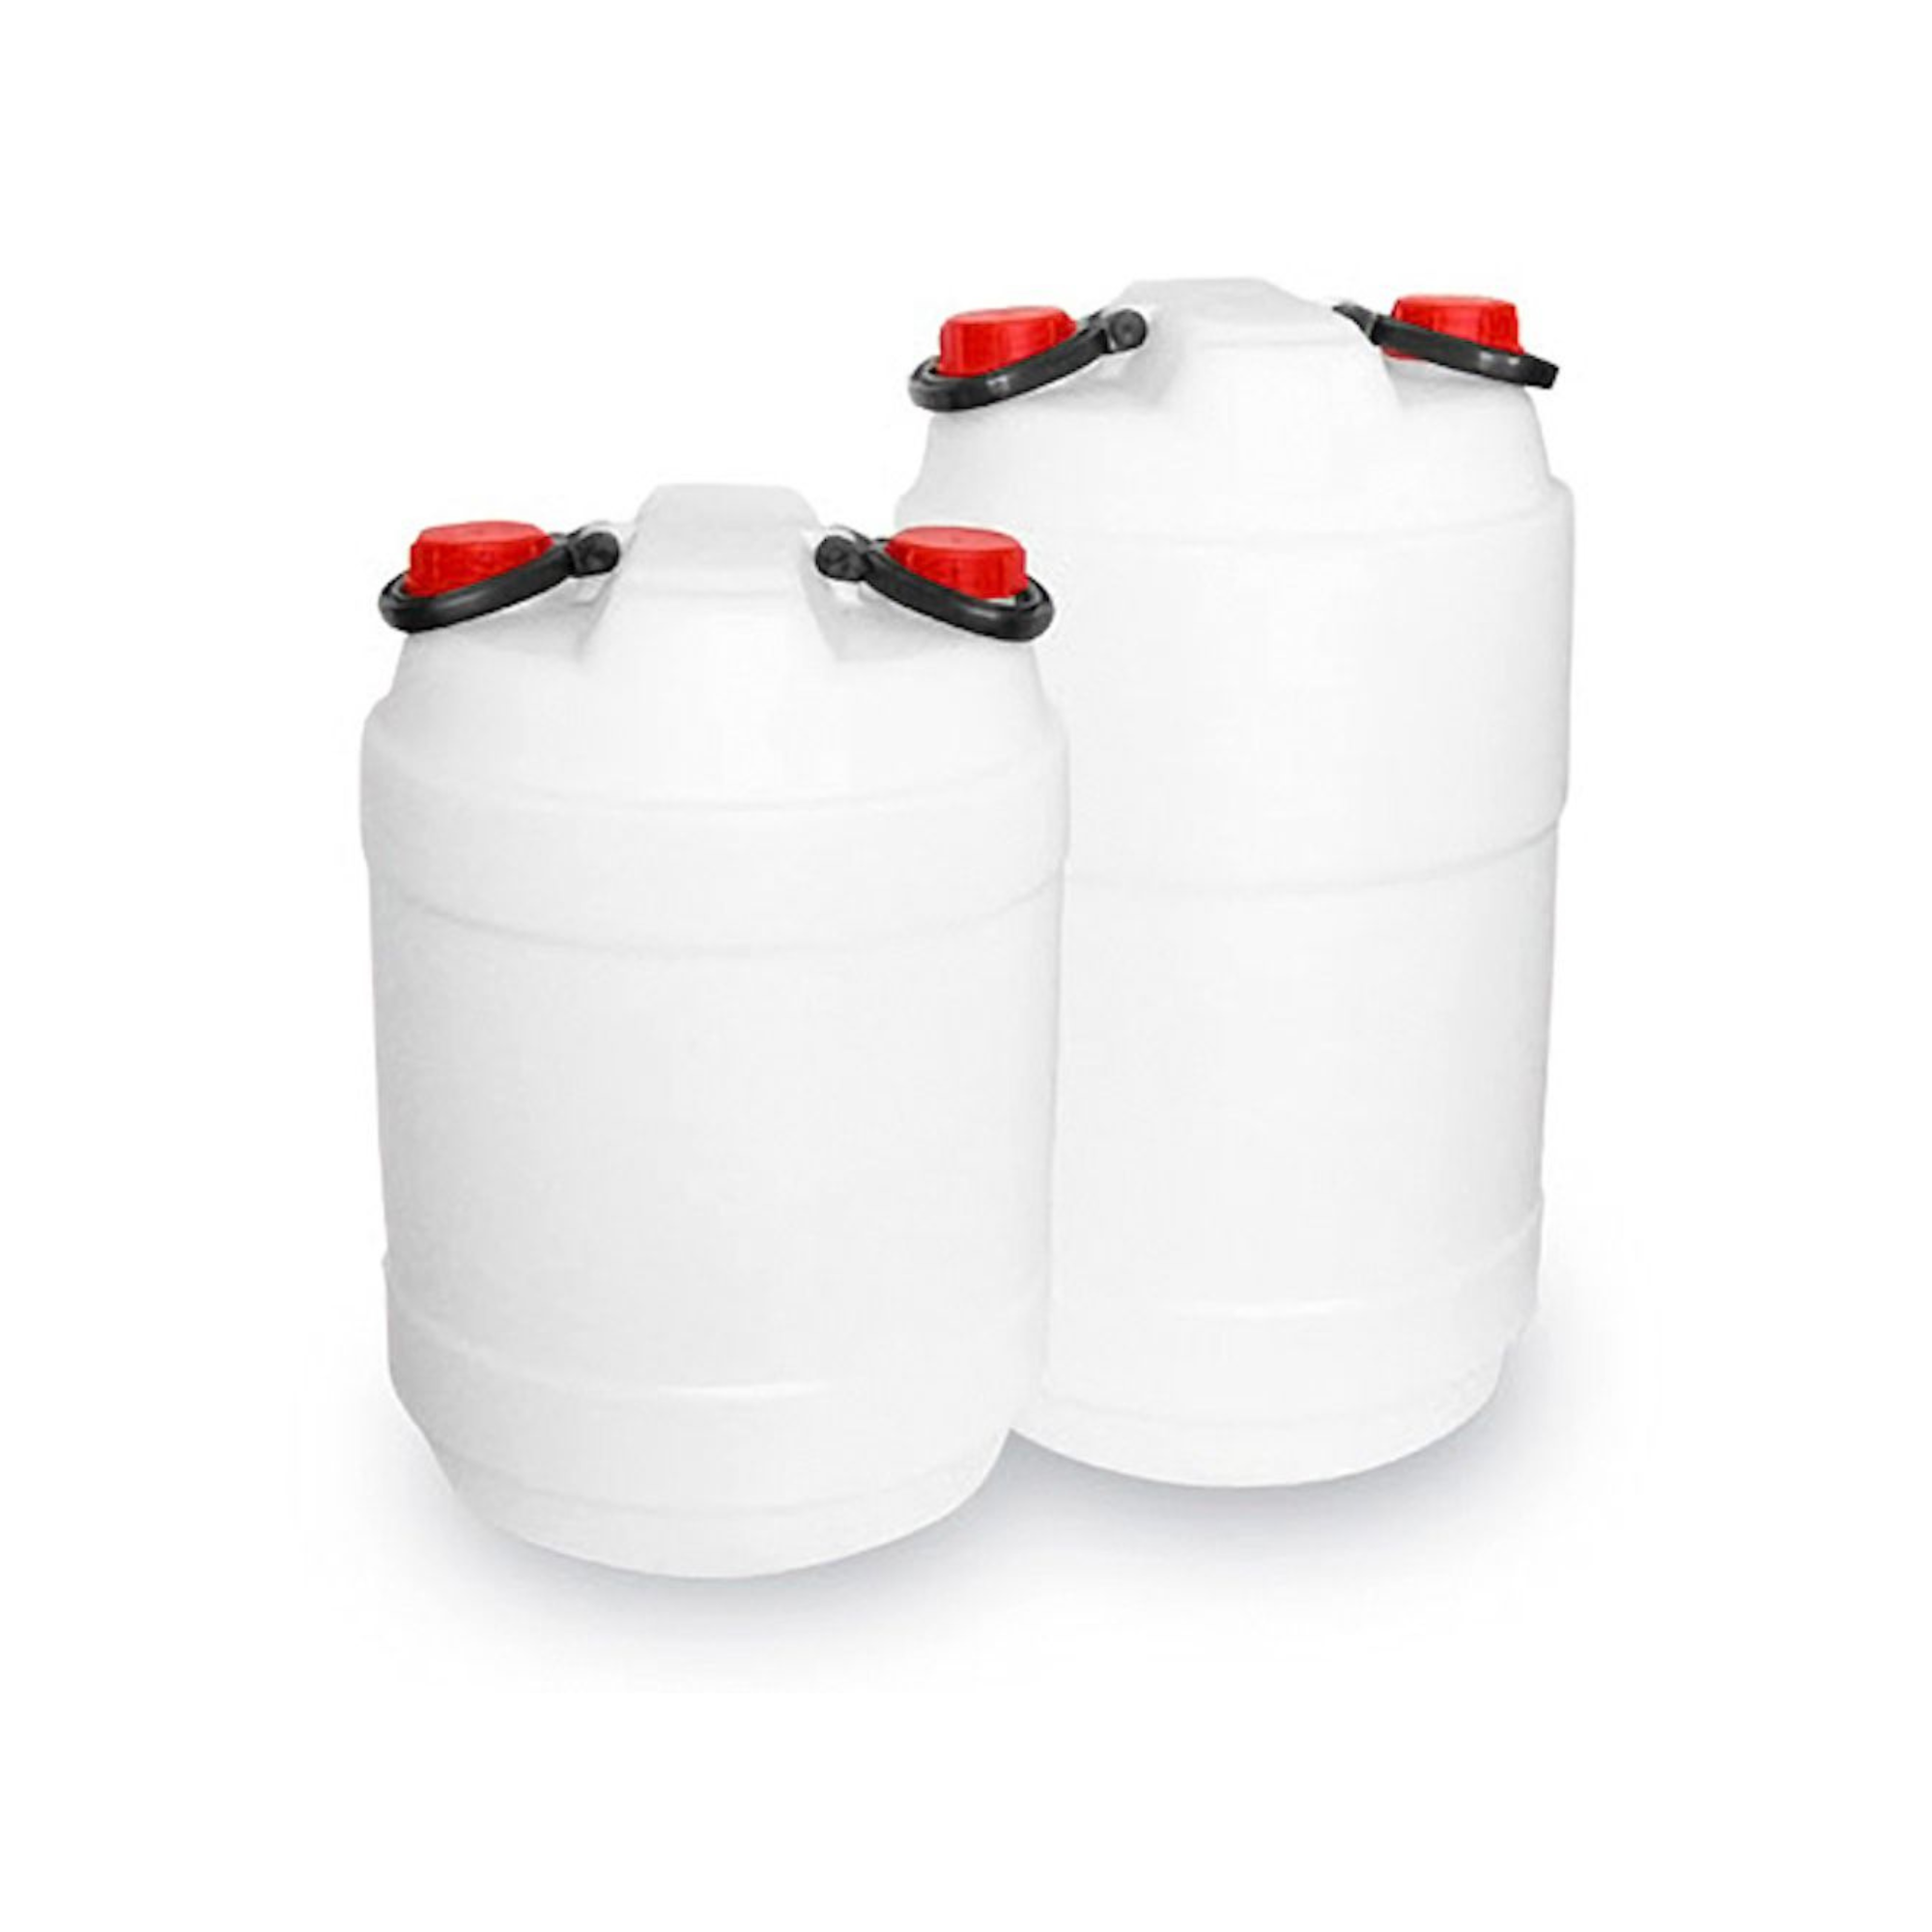 Mehrzweckfass aus Kunststoff mit Doppel-Schraubverschlüssen & Griffen 50 Liter | HxØ 61x36cm | Weiß